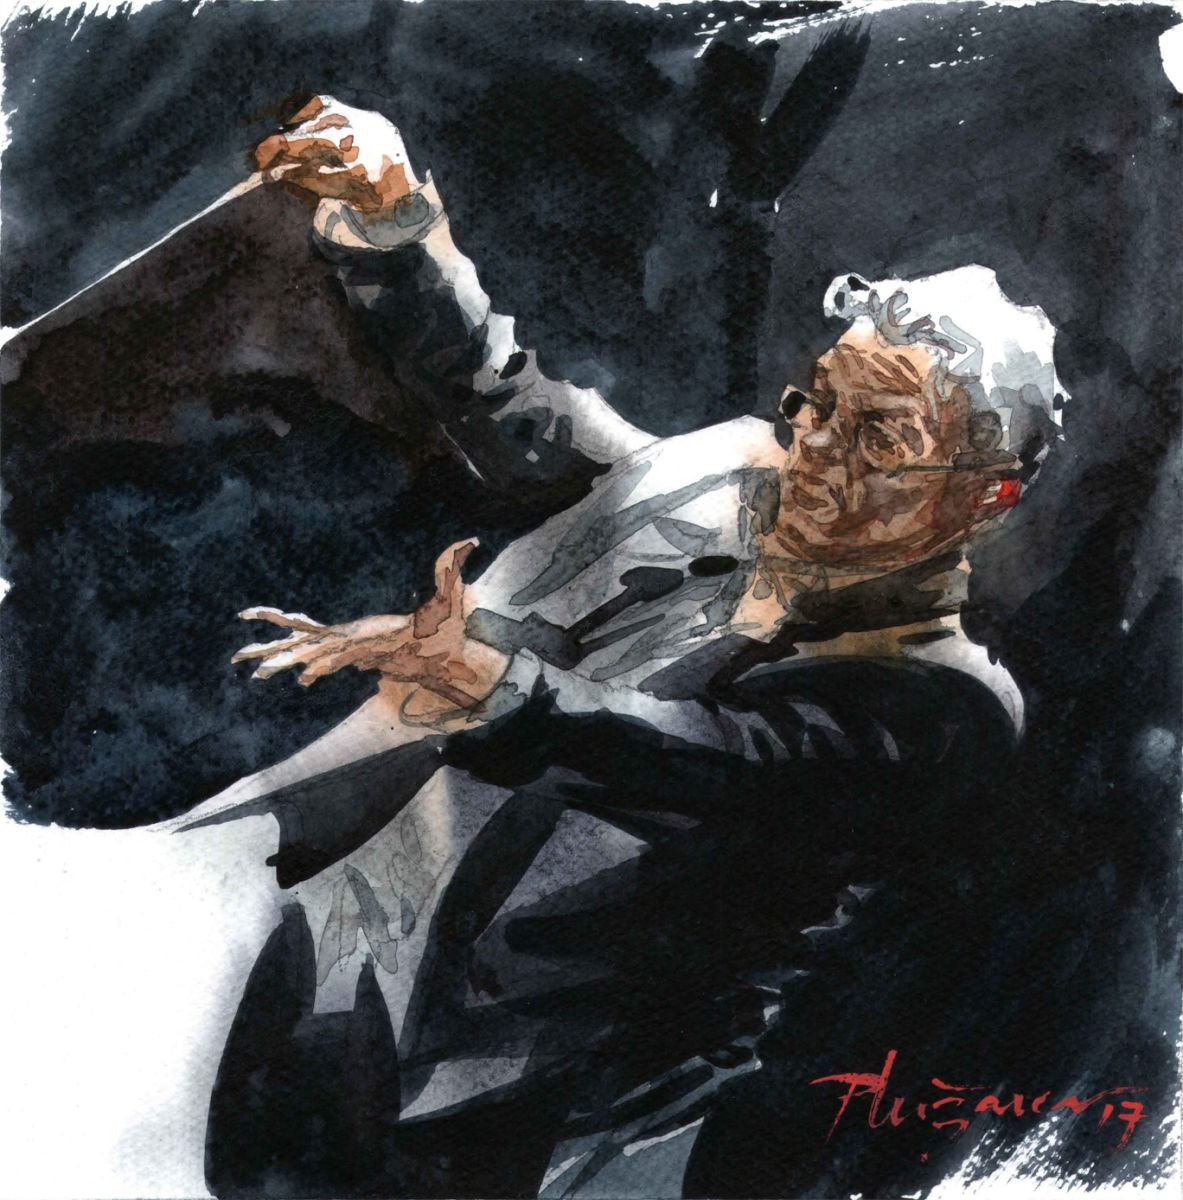 Conductor by Milan Pluzarev